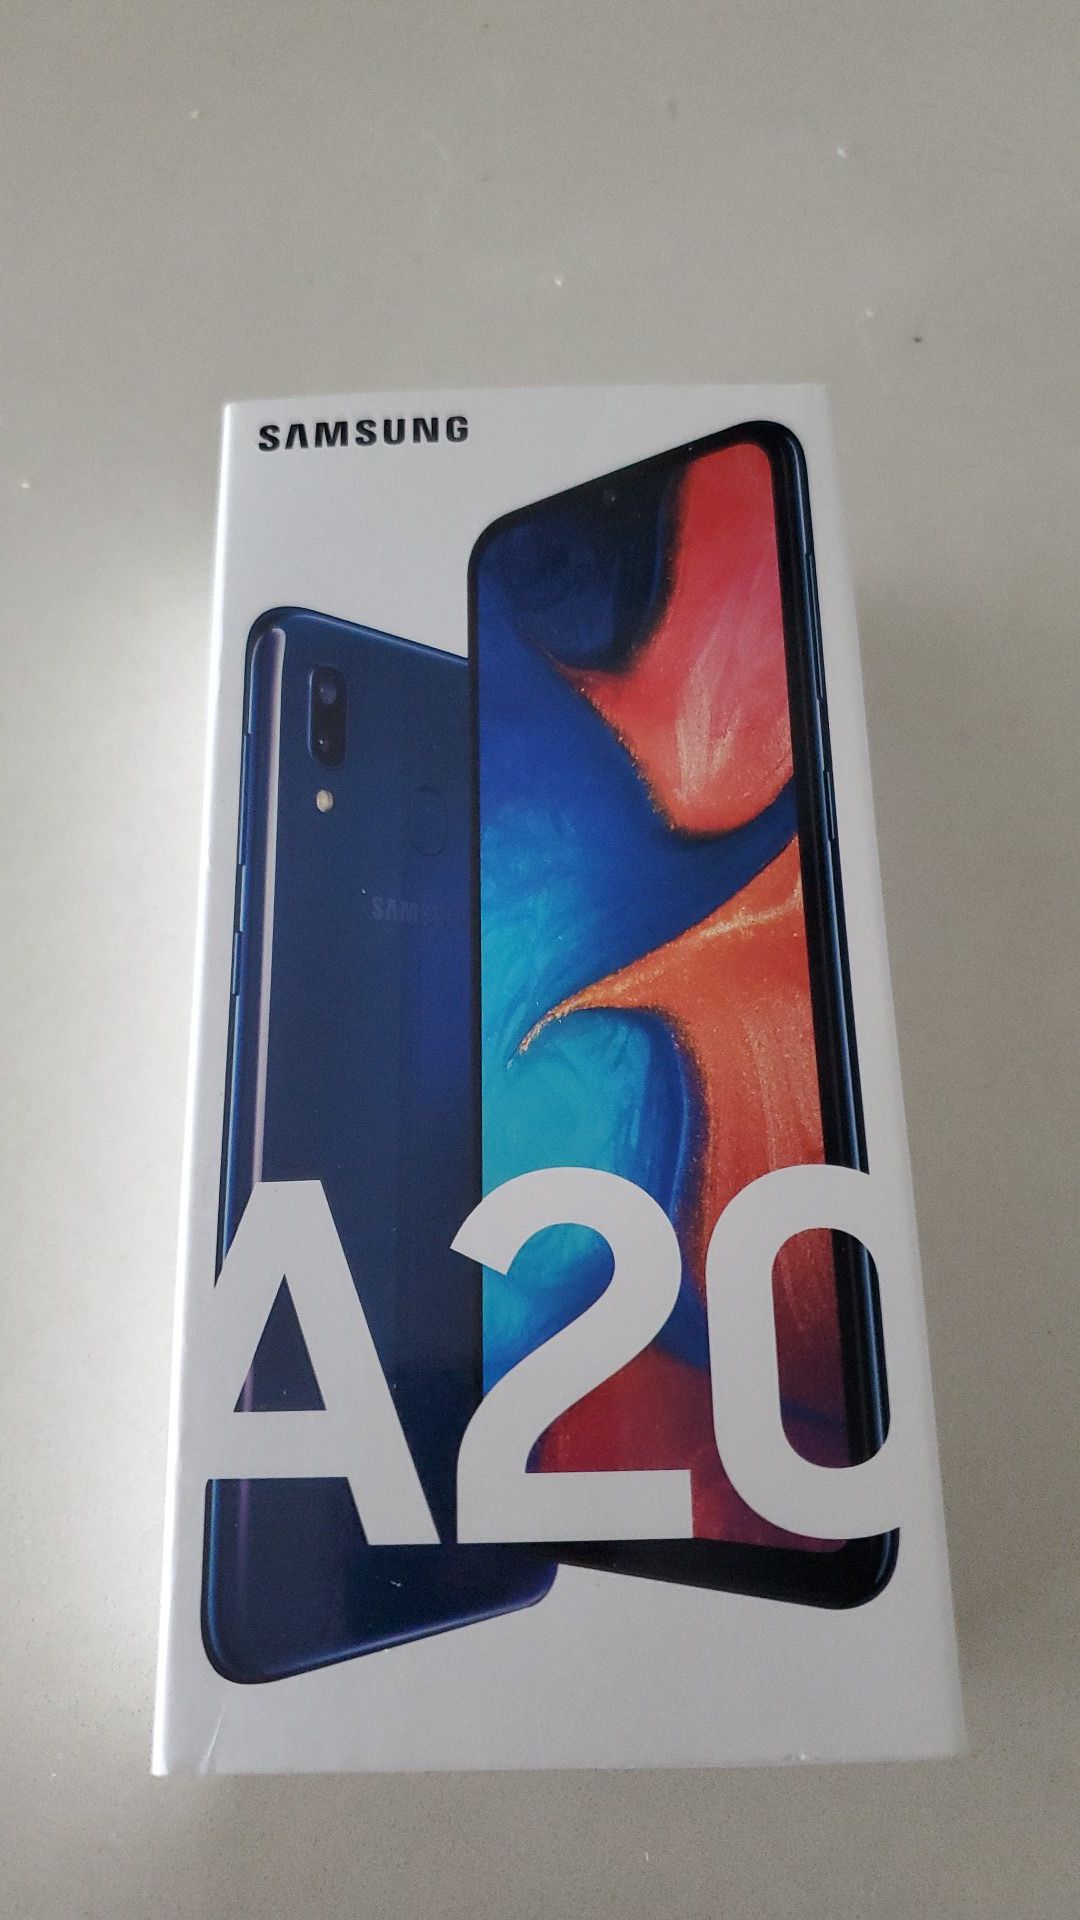 Samsung A20 unlocked